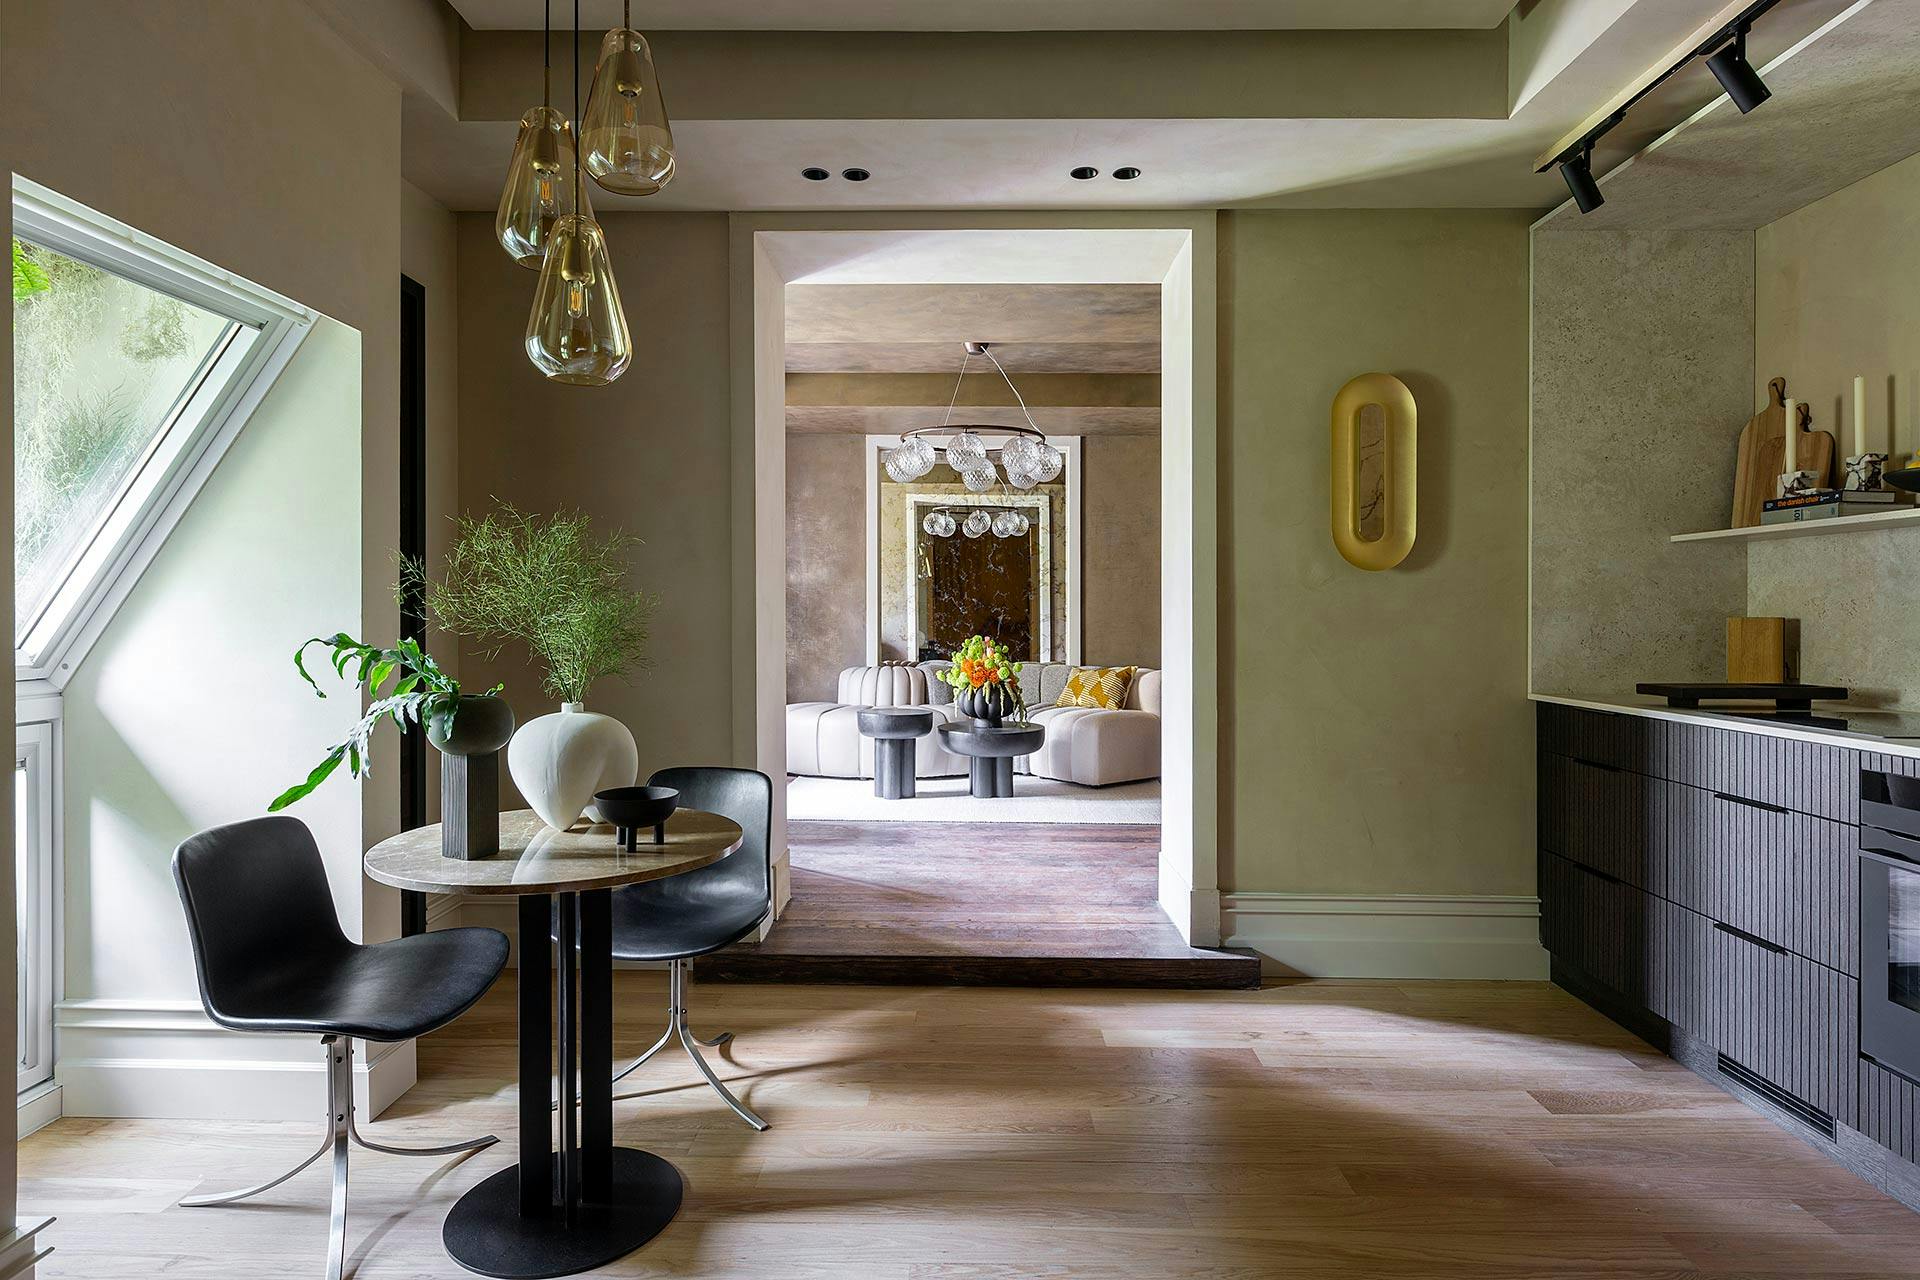 Image of casa decor 2023 salon cocina danish design comad 04.jpg?auto=format%2Ccompress&ixlib=php 3.3 in Drita Kafè - Cosentino